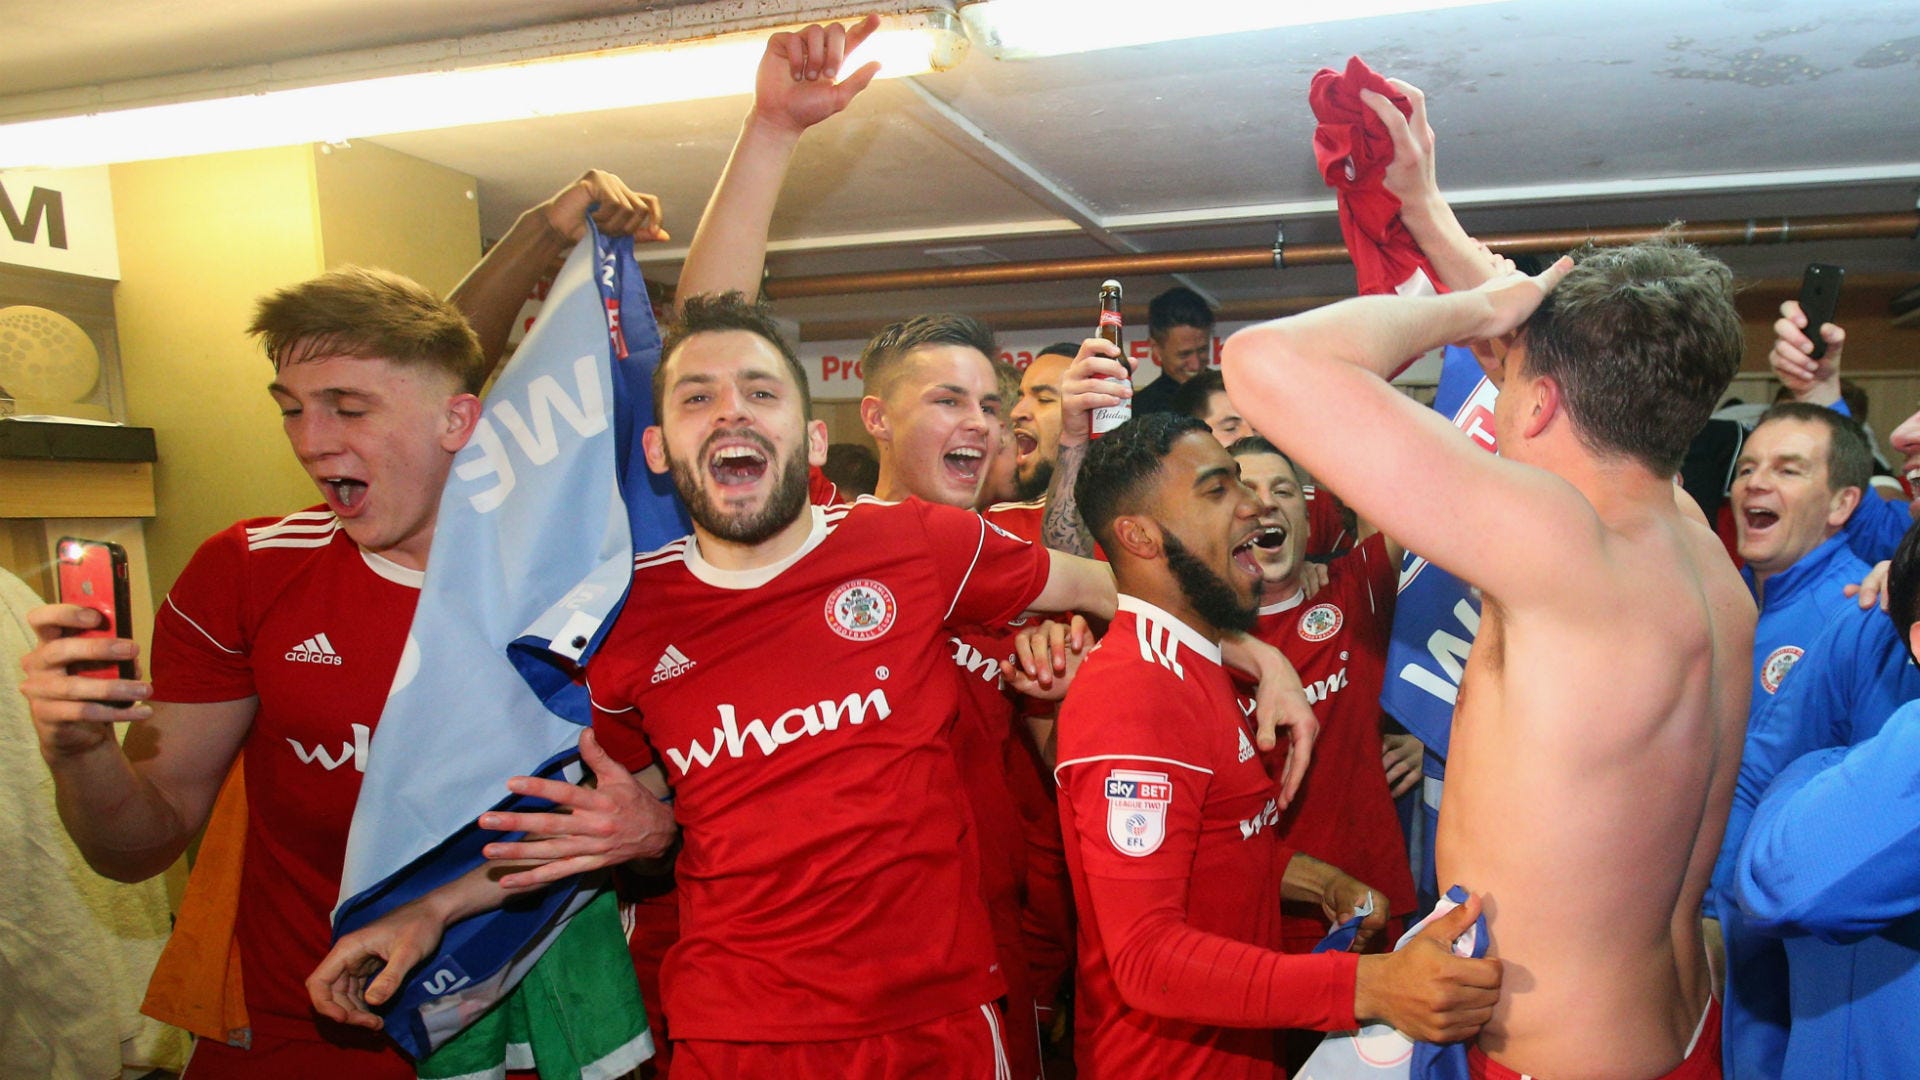 Accrington Stanley League One promotion celebrations